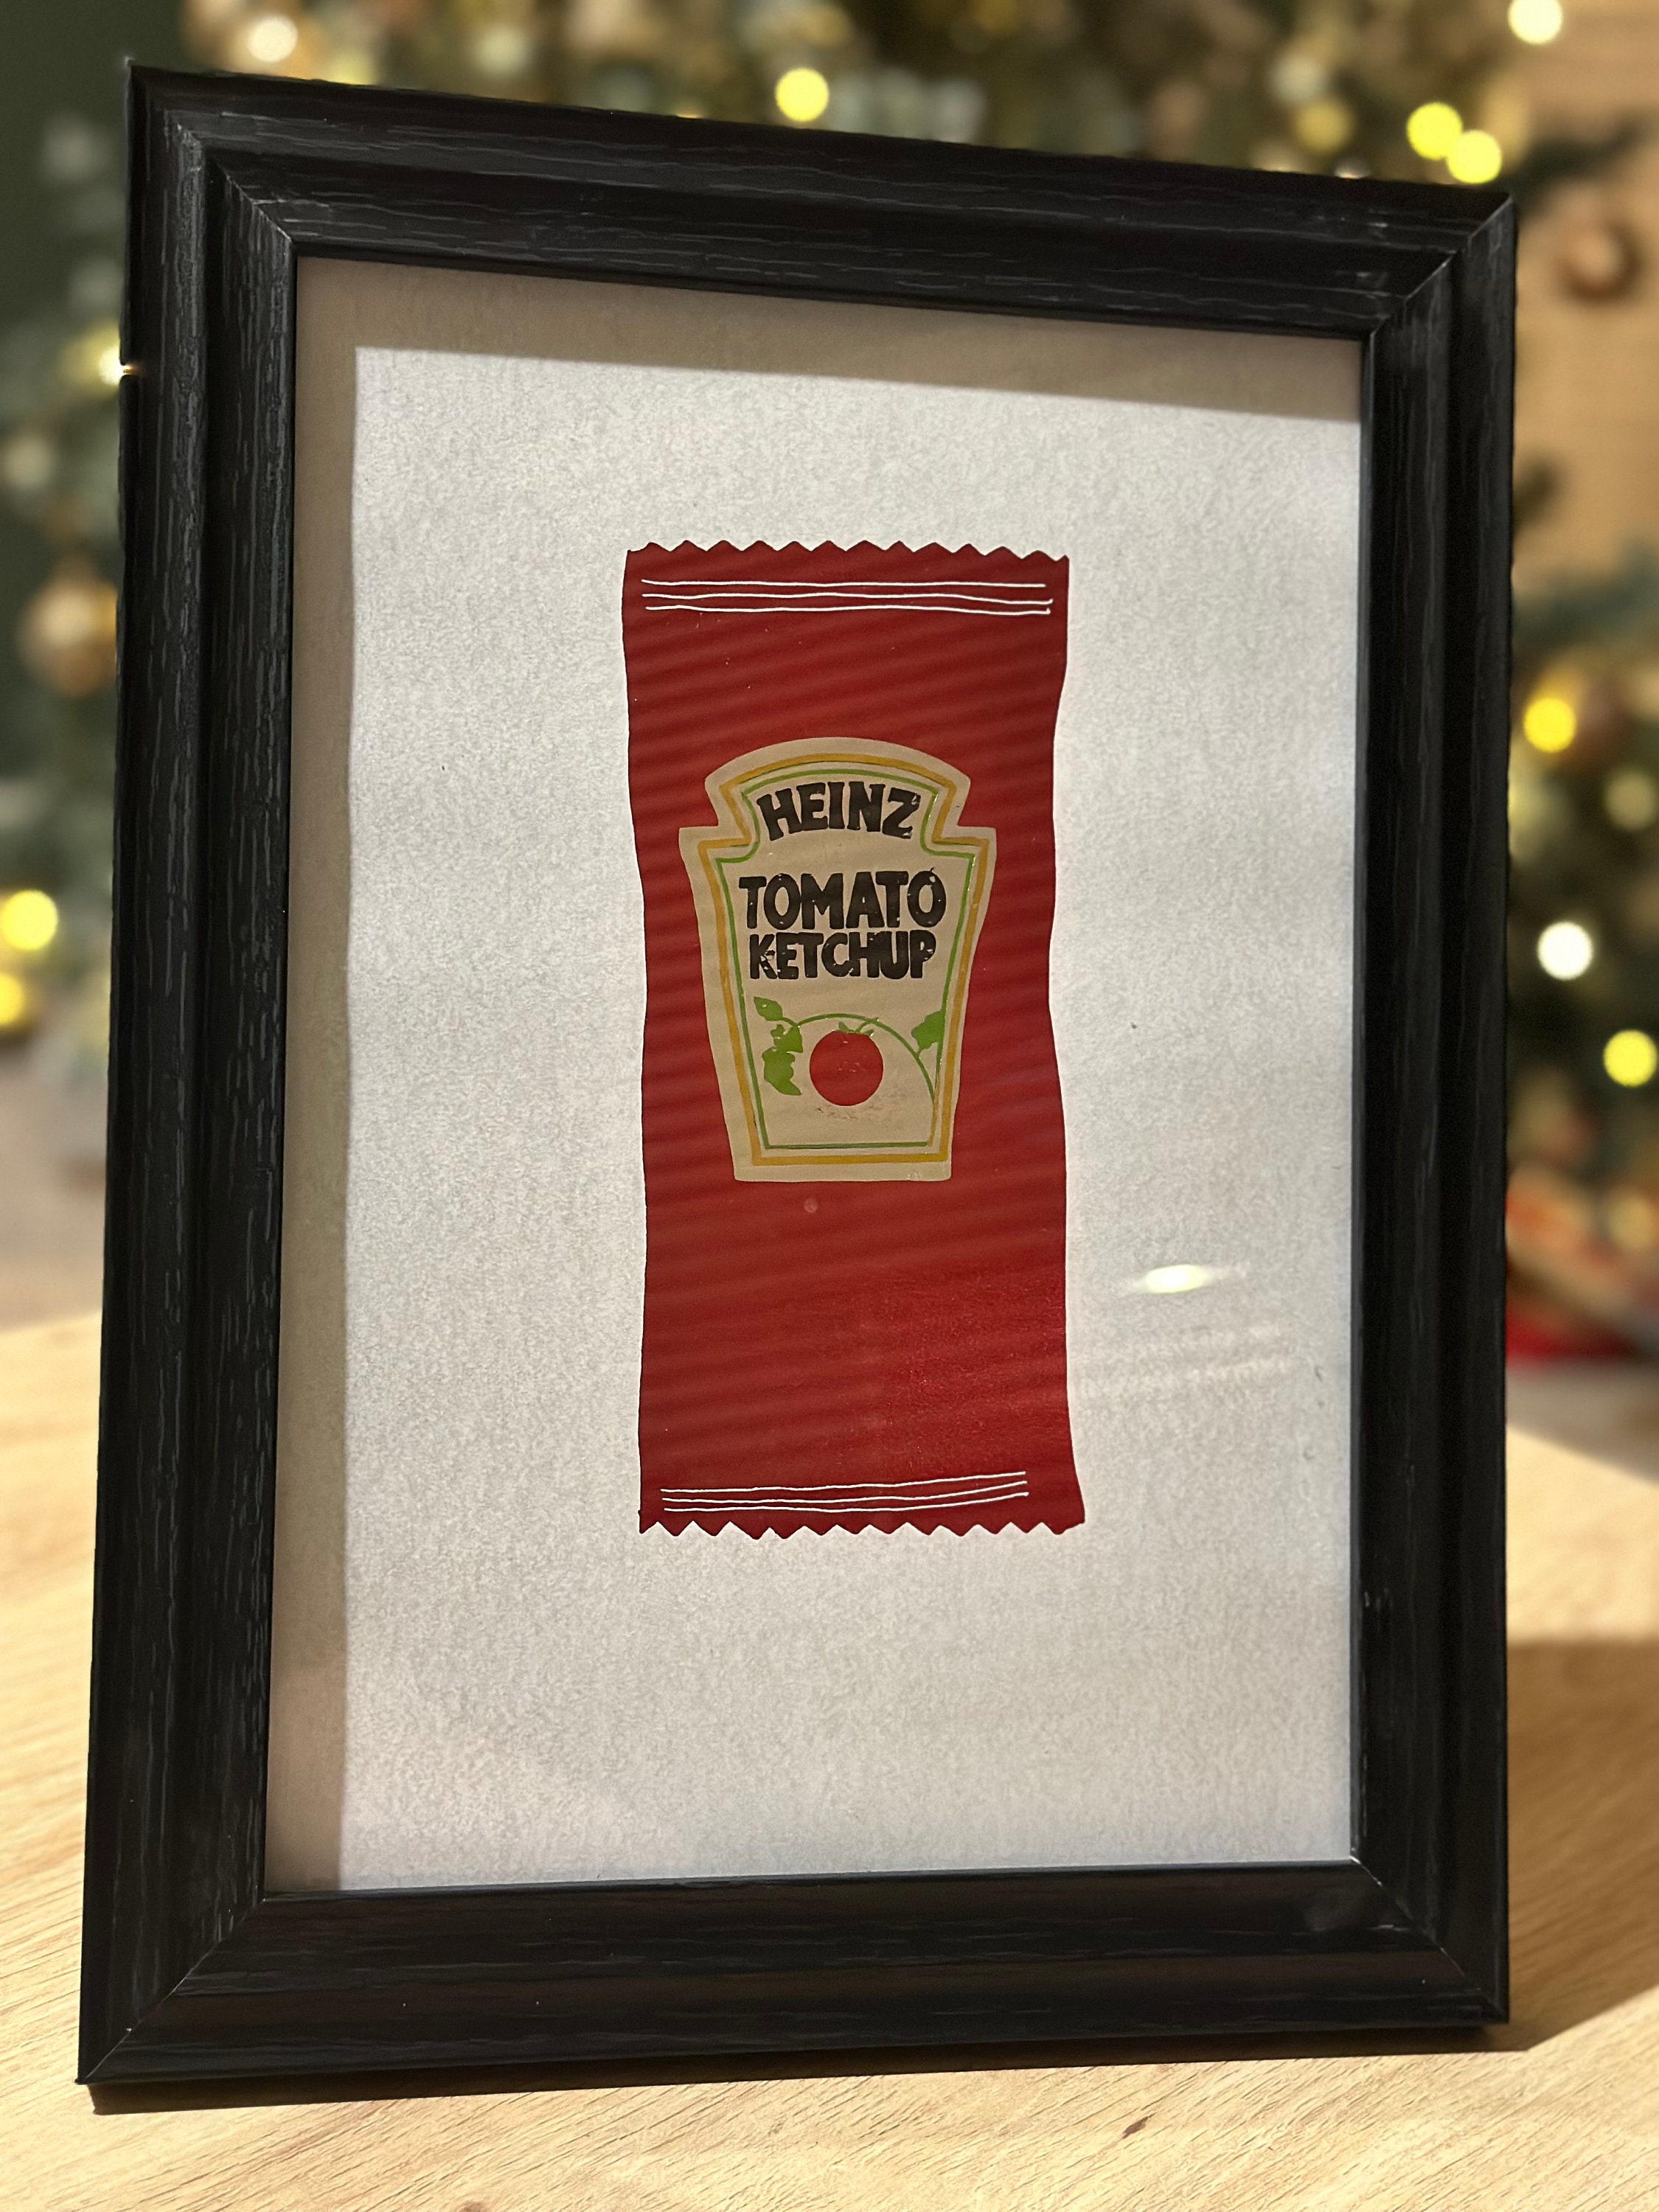 Faux ketchup renversé paquets de moutarde renversés Joke Gag